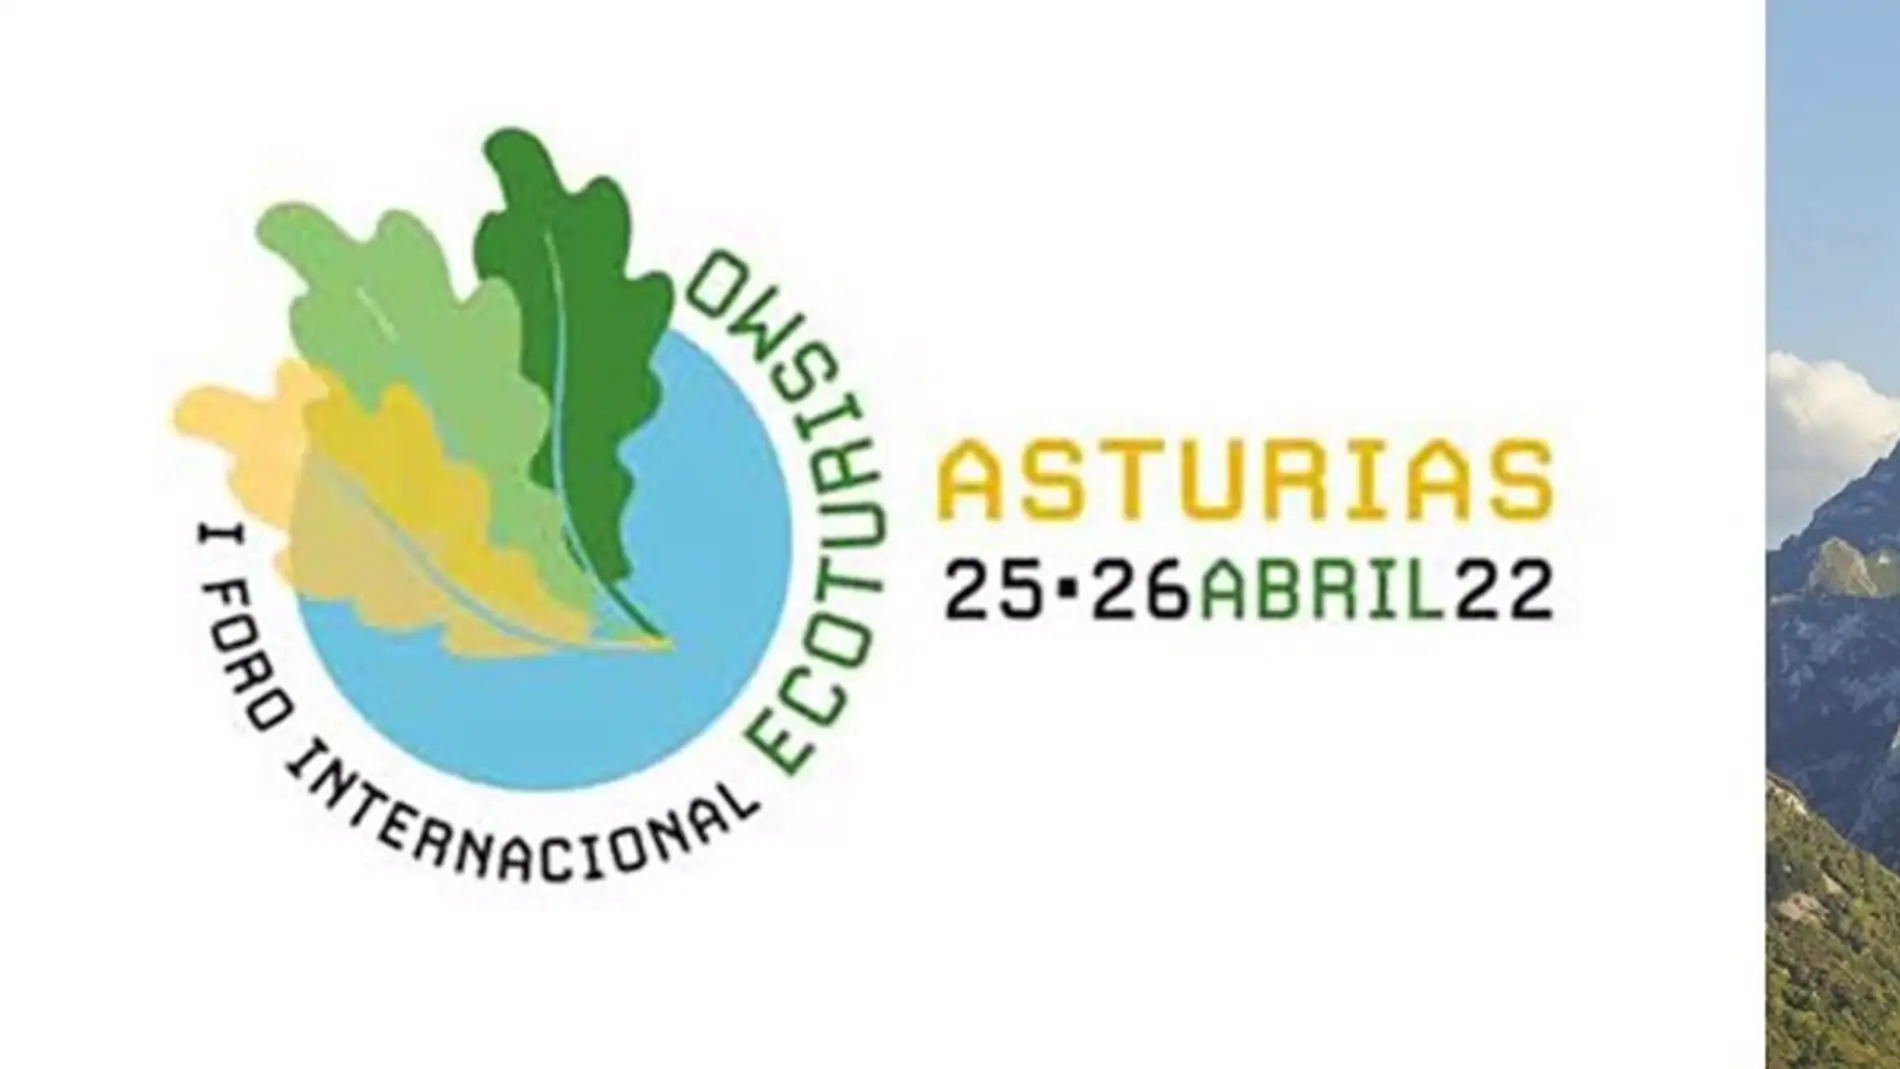 Imagen promocional del Foro Internacional de Ecoturismo en Cangas de Onís